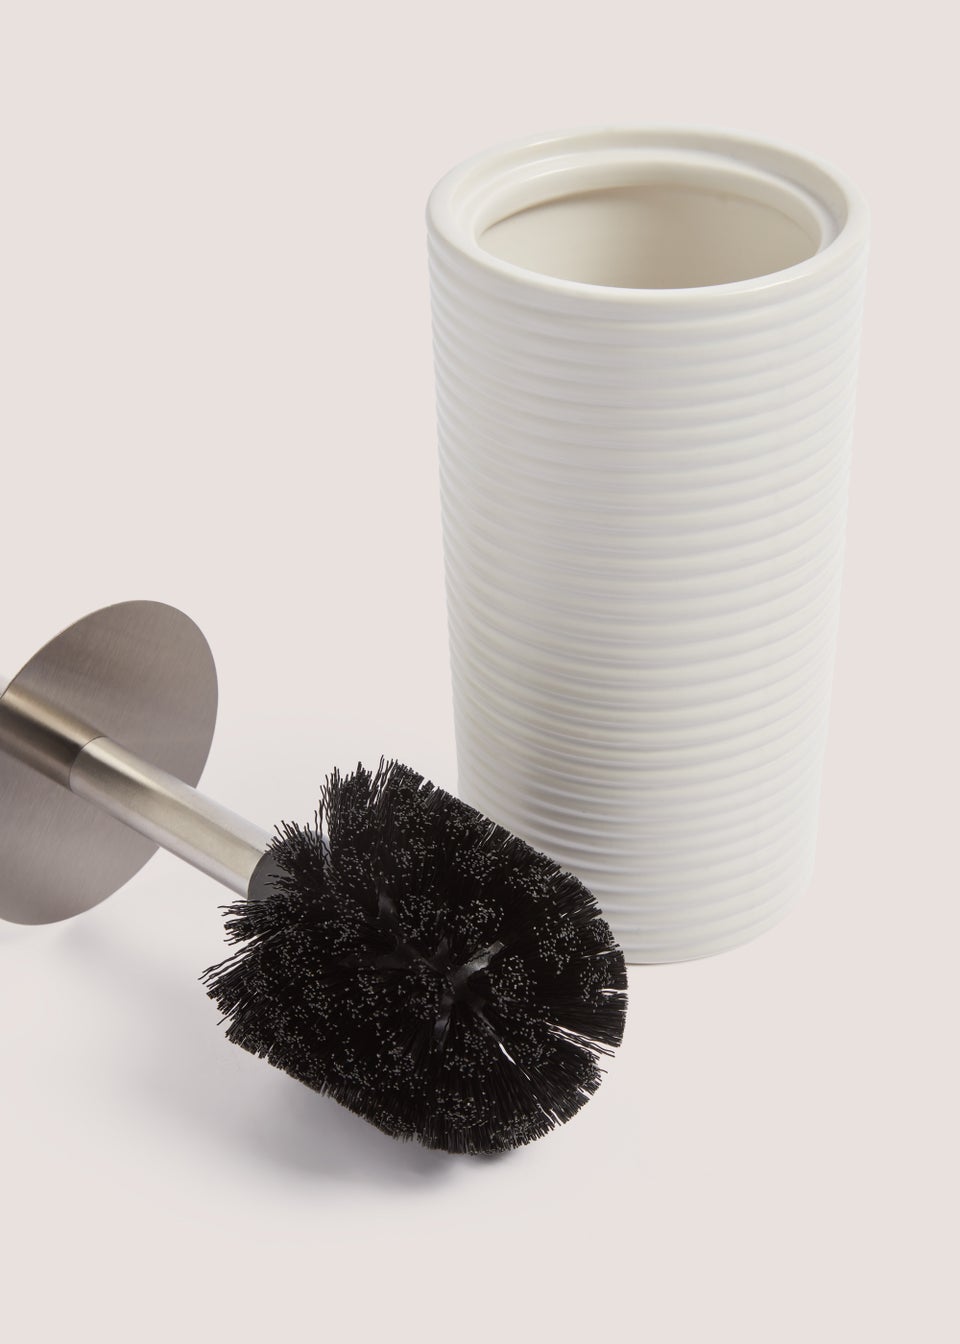 White Ceramic Toilet Brush (18cm x 10cm x 58cm)